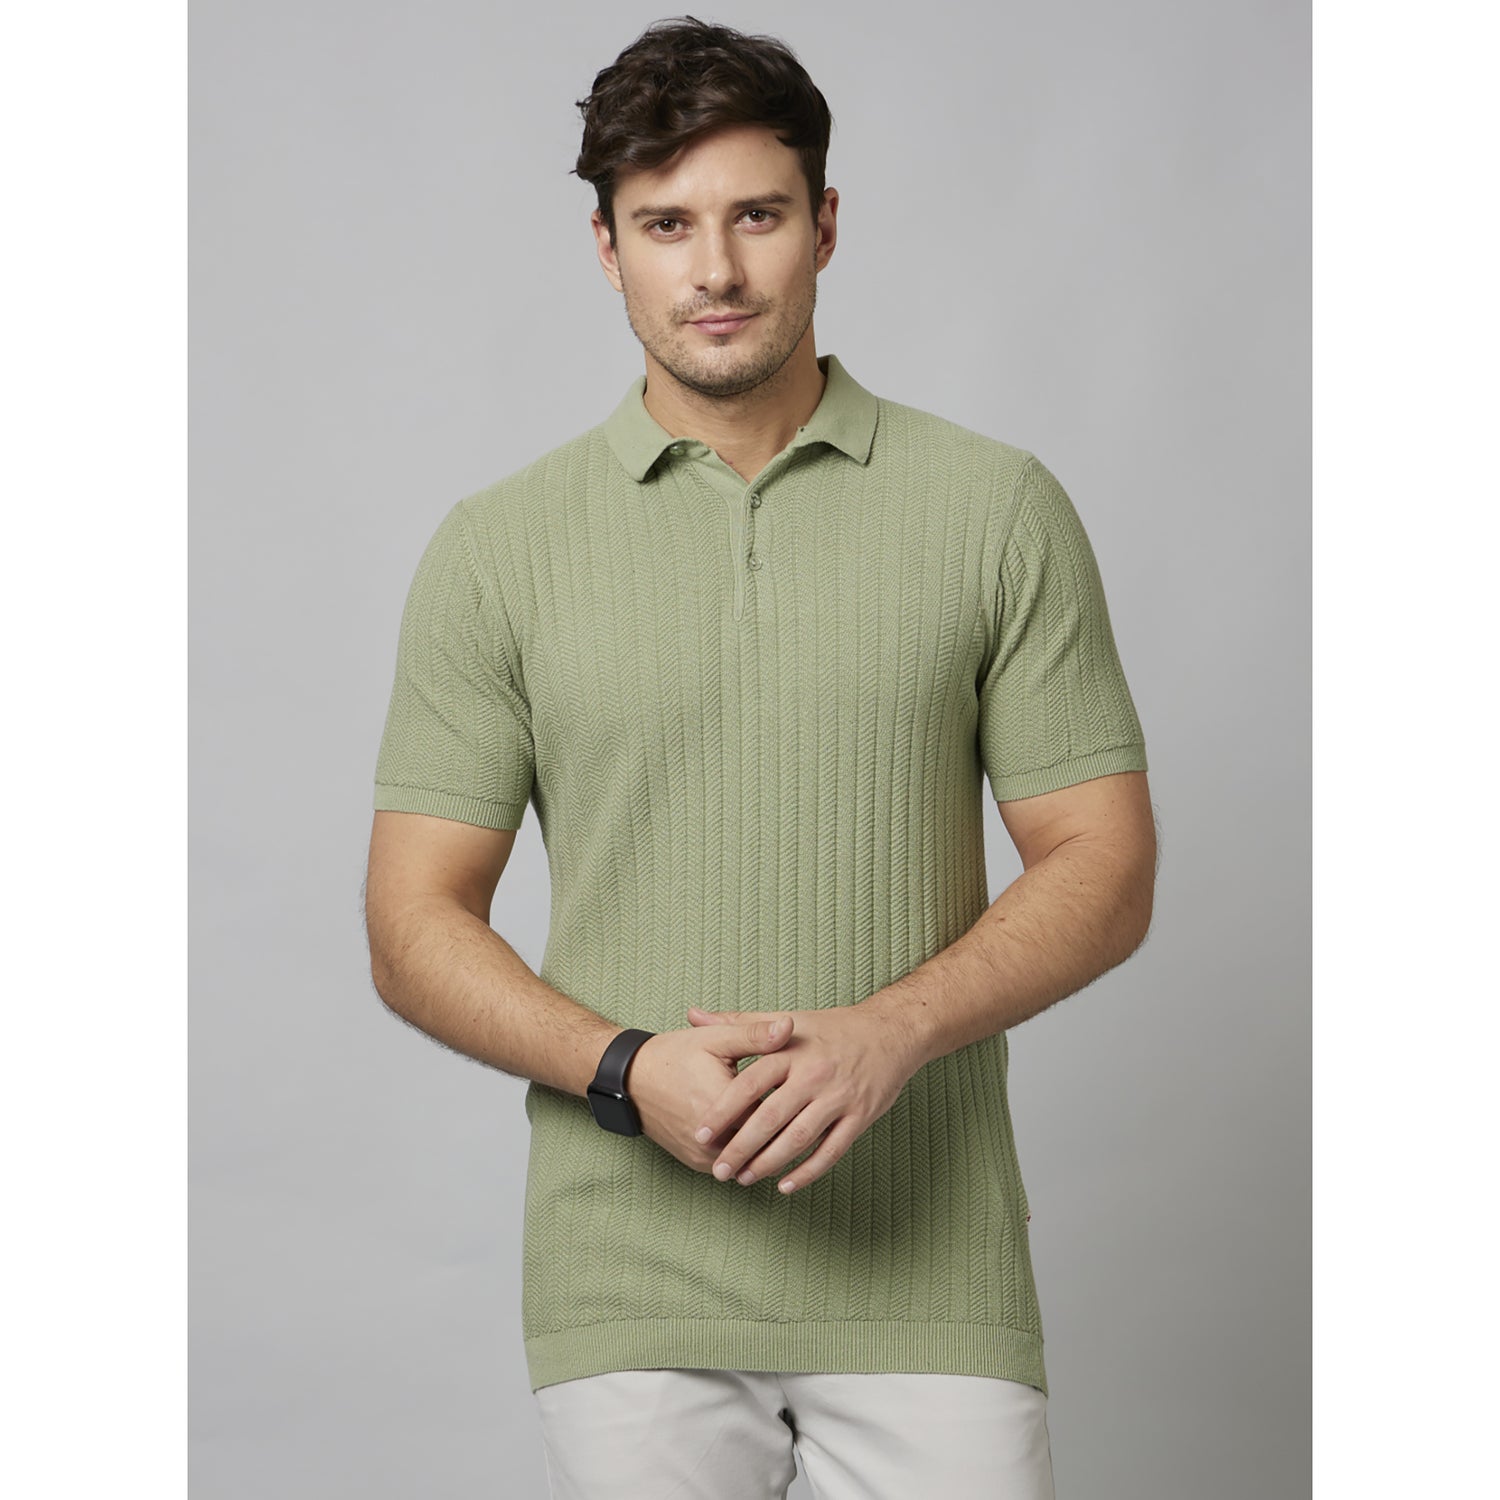 Light Green Self Design Short Sleeve Cotton T-Shirts (DEMASSI1)